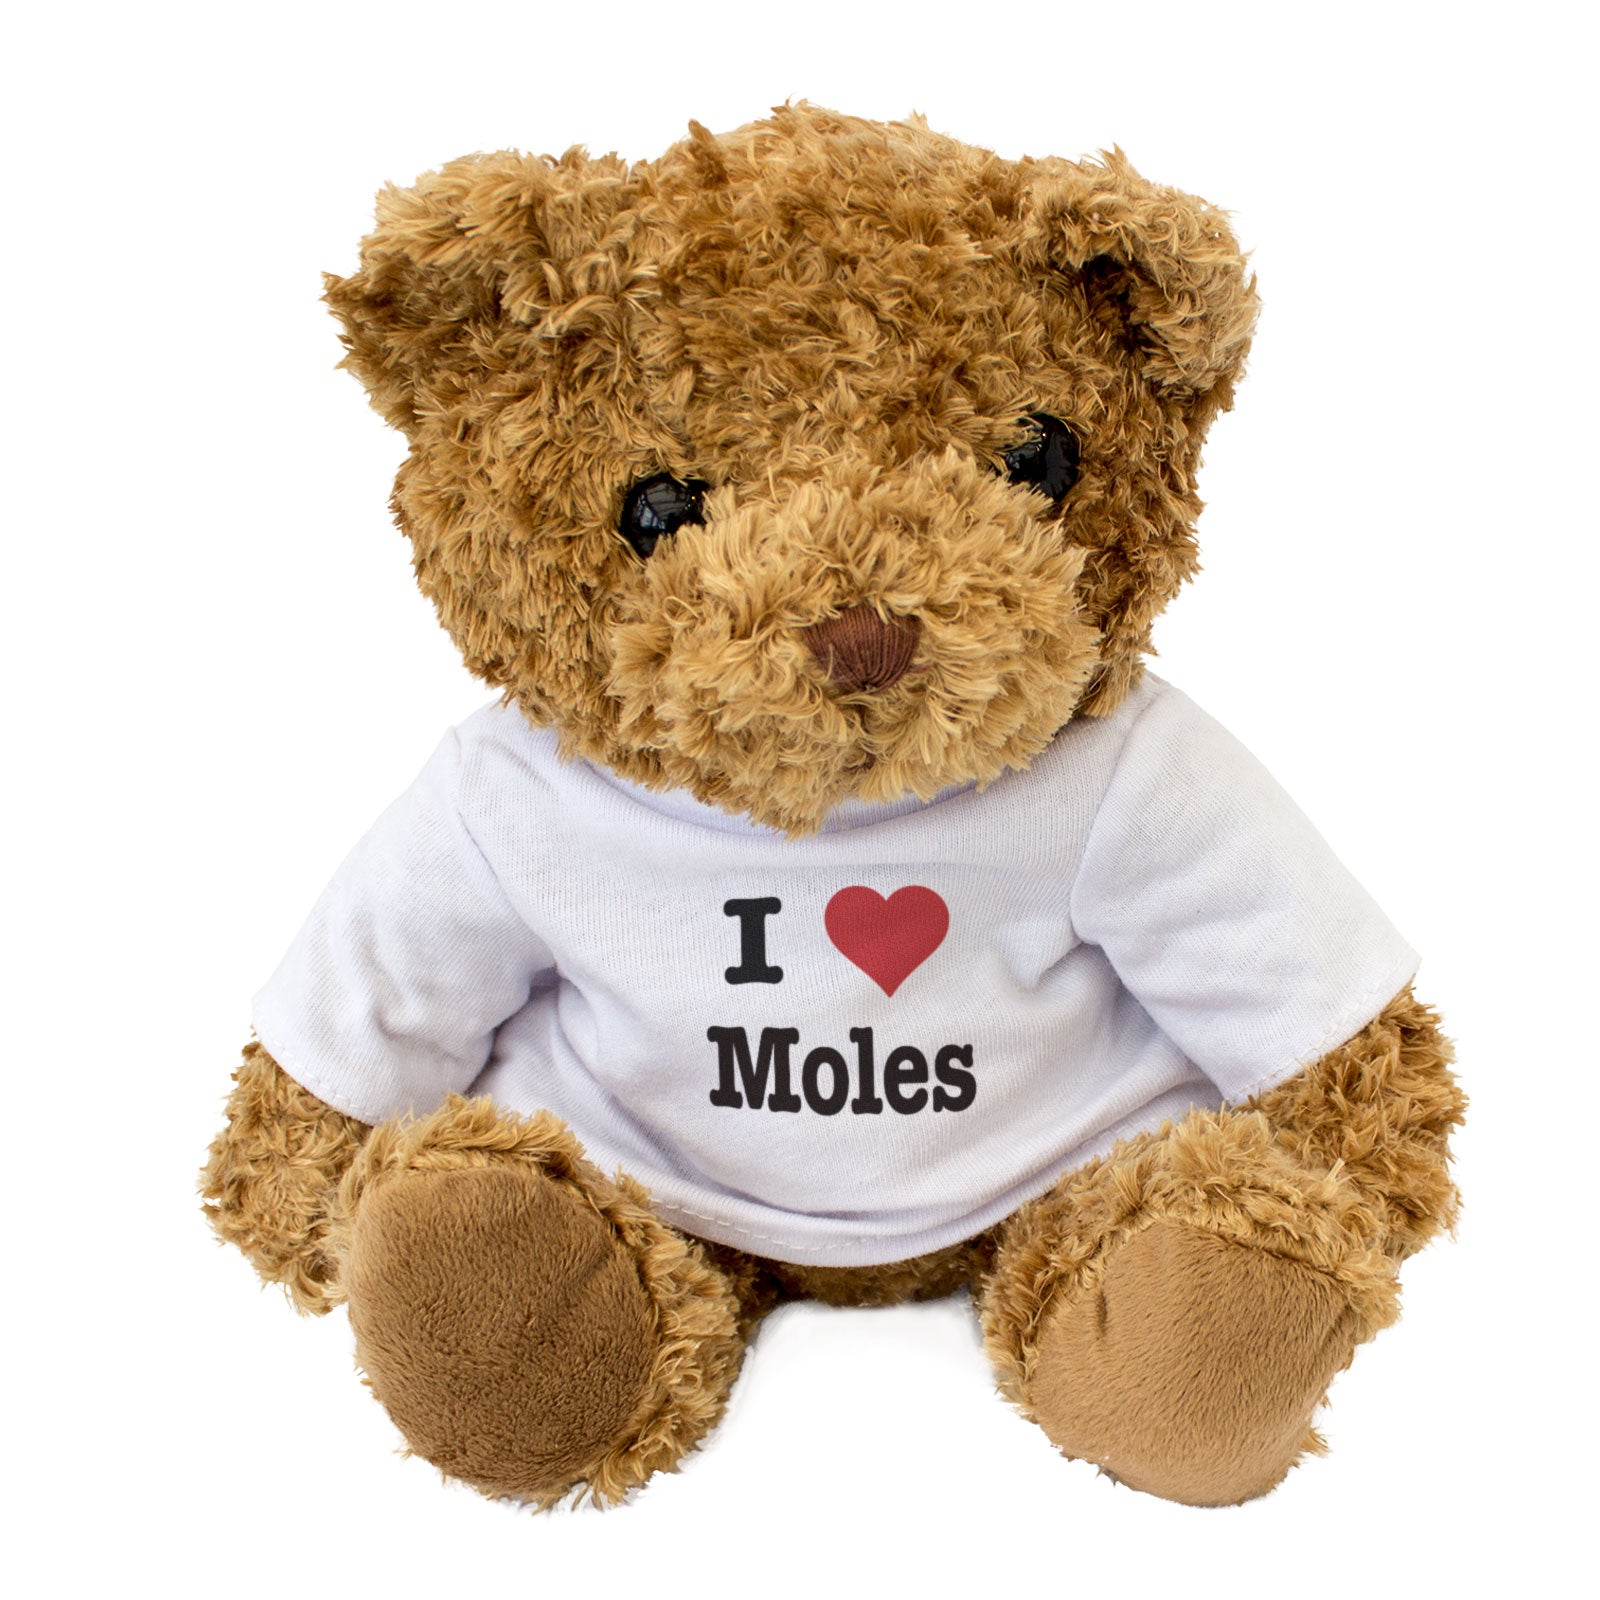 I Love Moles - Teddy Bear